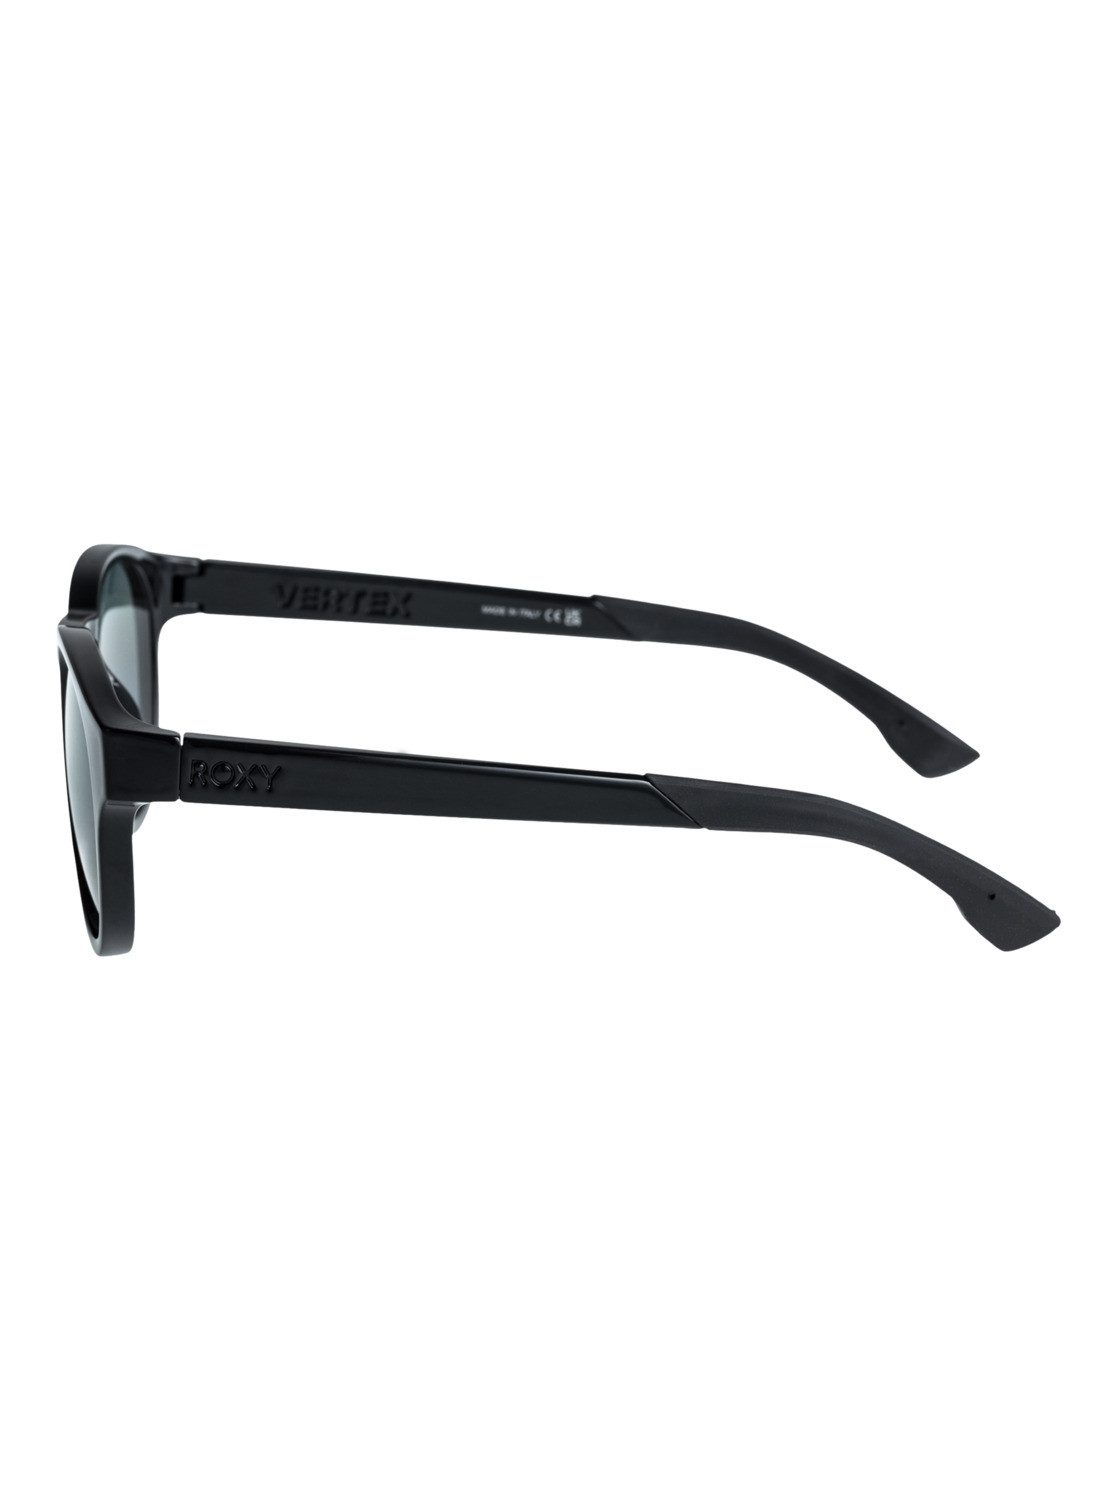 Sonnenbrille Roxy Vertex P Plz Black/Grey